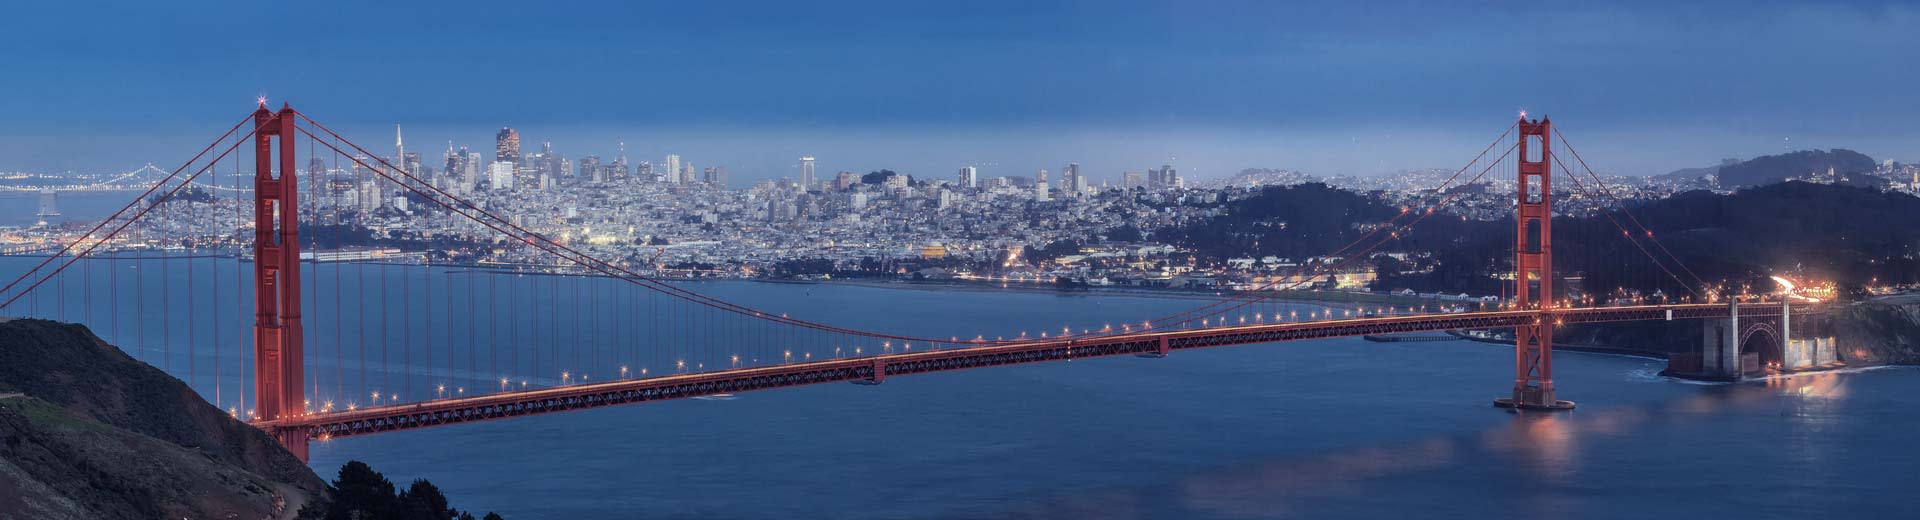 Con San Francisco en el fondo, el mundialmente famoso puente Golden Gate se extiende por la bahía.